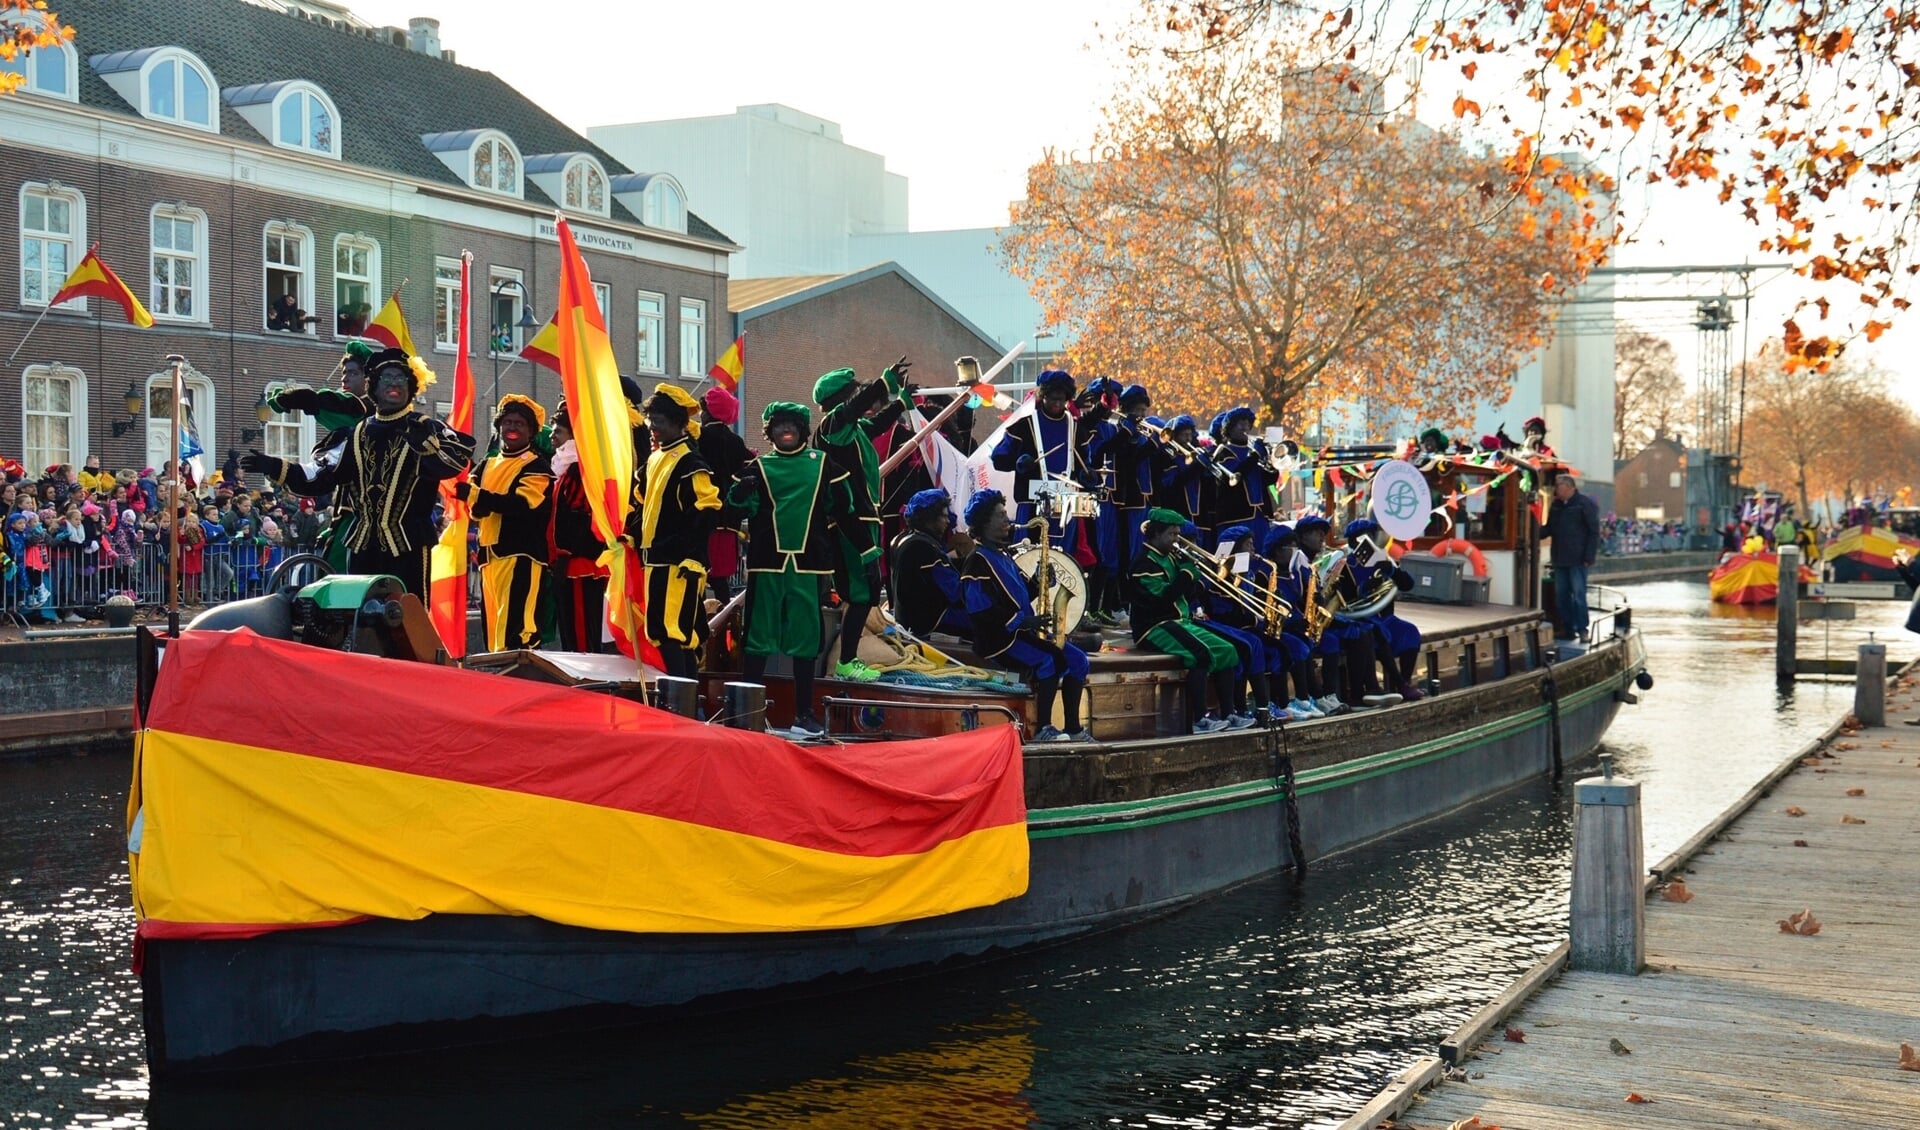 De boot van Sinterklaas wordt begeleid door een kleine vloot van vier schepen, waarop allerlei soorten pieten staan. 